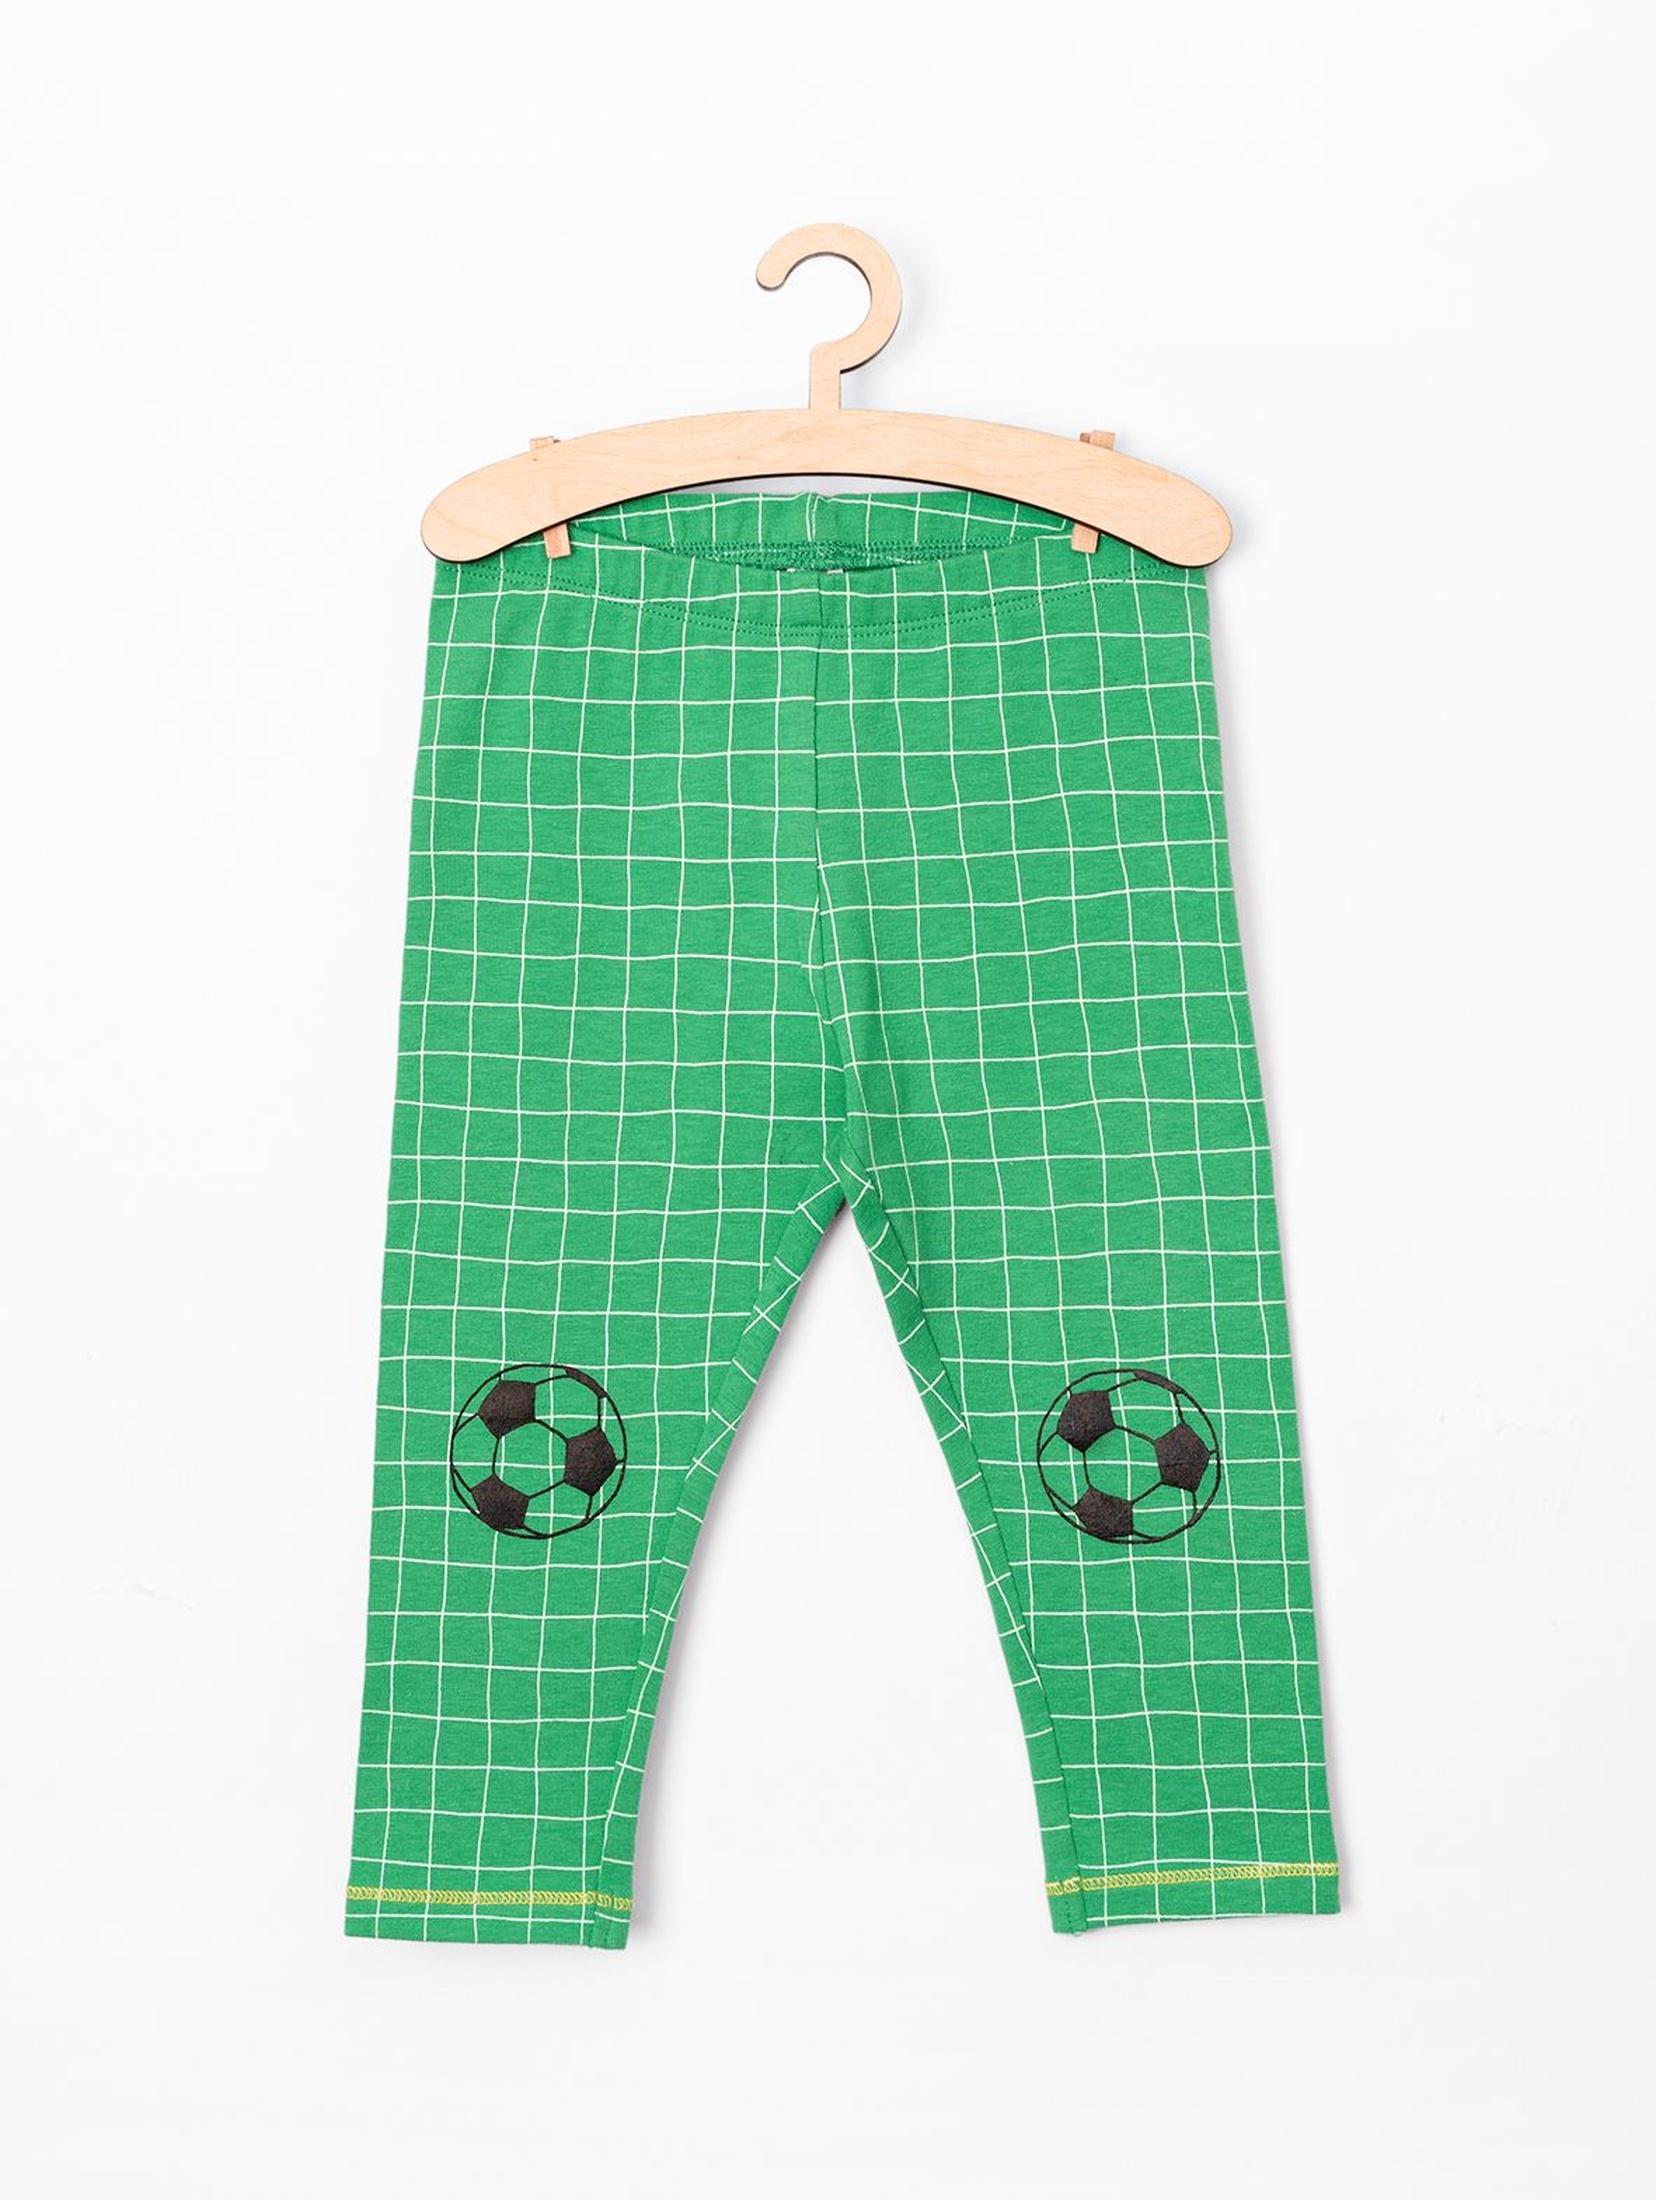 Spodnie niemowlęce zielone w kratkę- piłka nożna